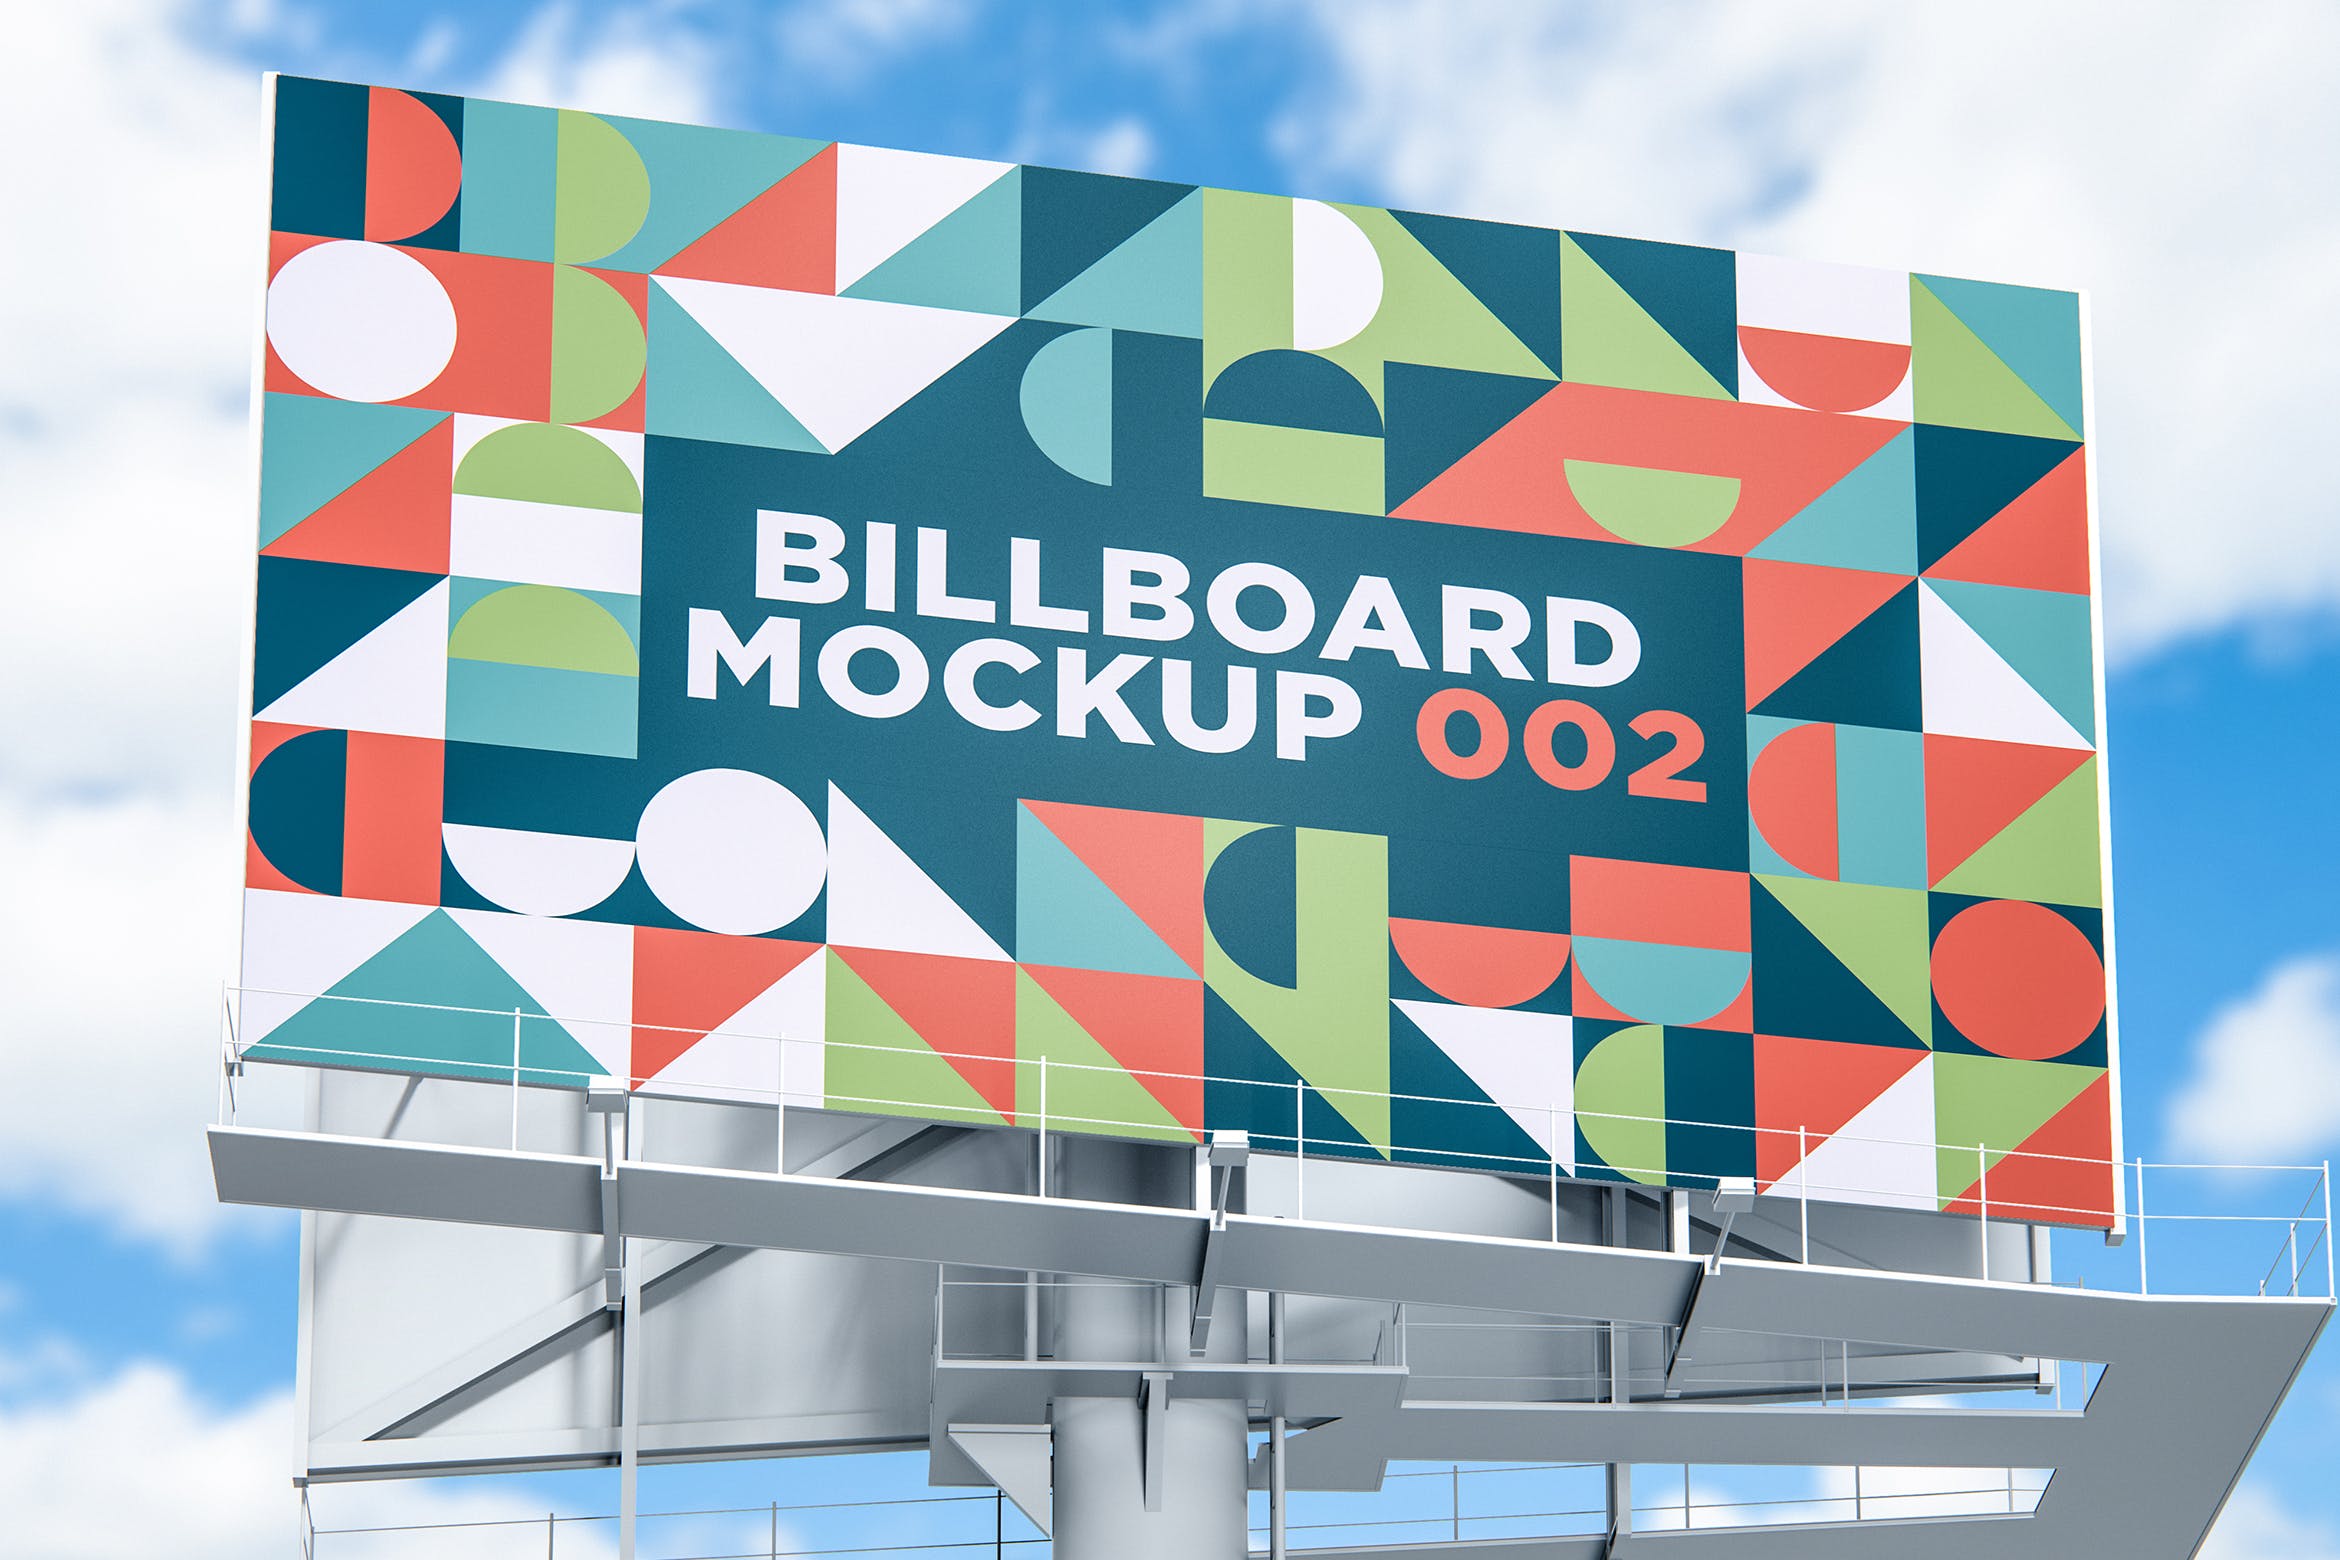 城市公路广告牌样机模板v2 Billboard Mockup 002设计素材模板